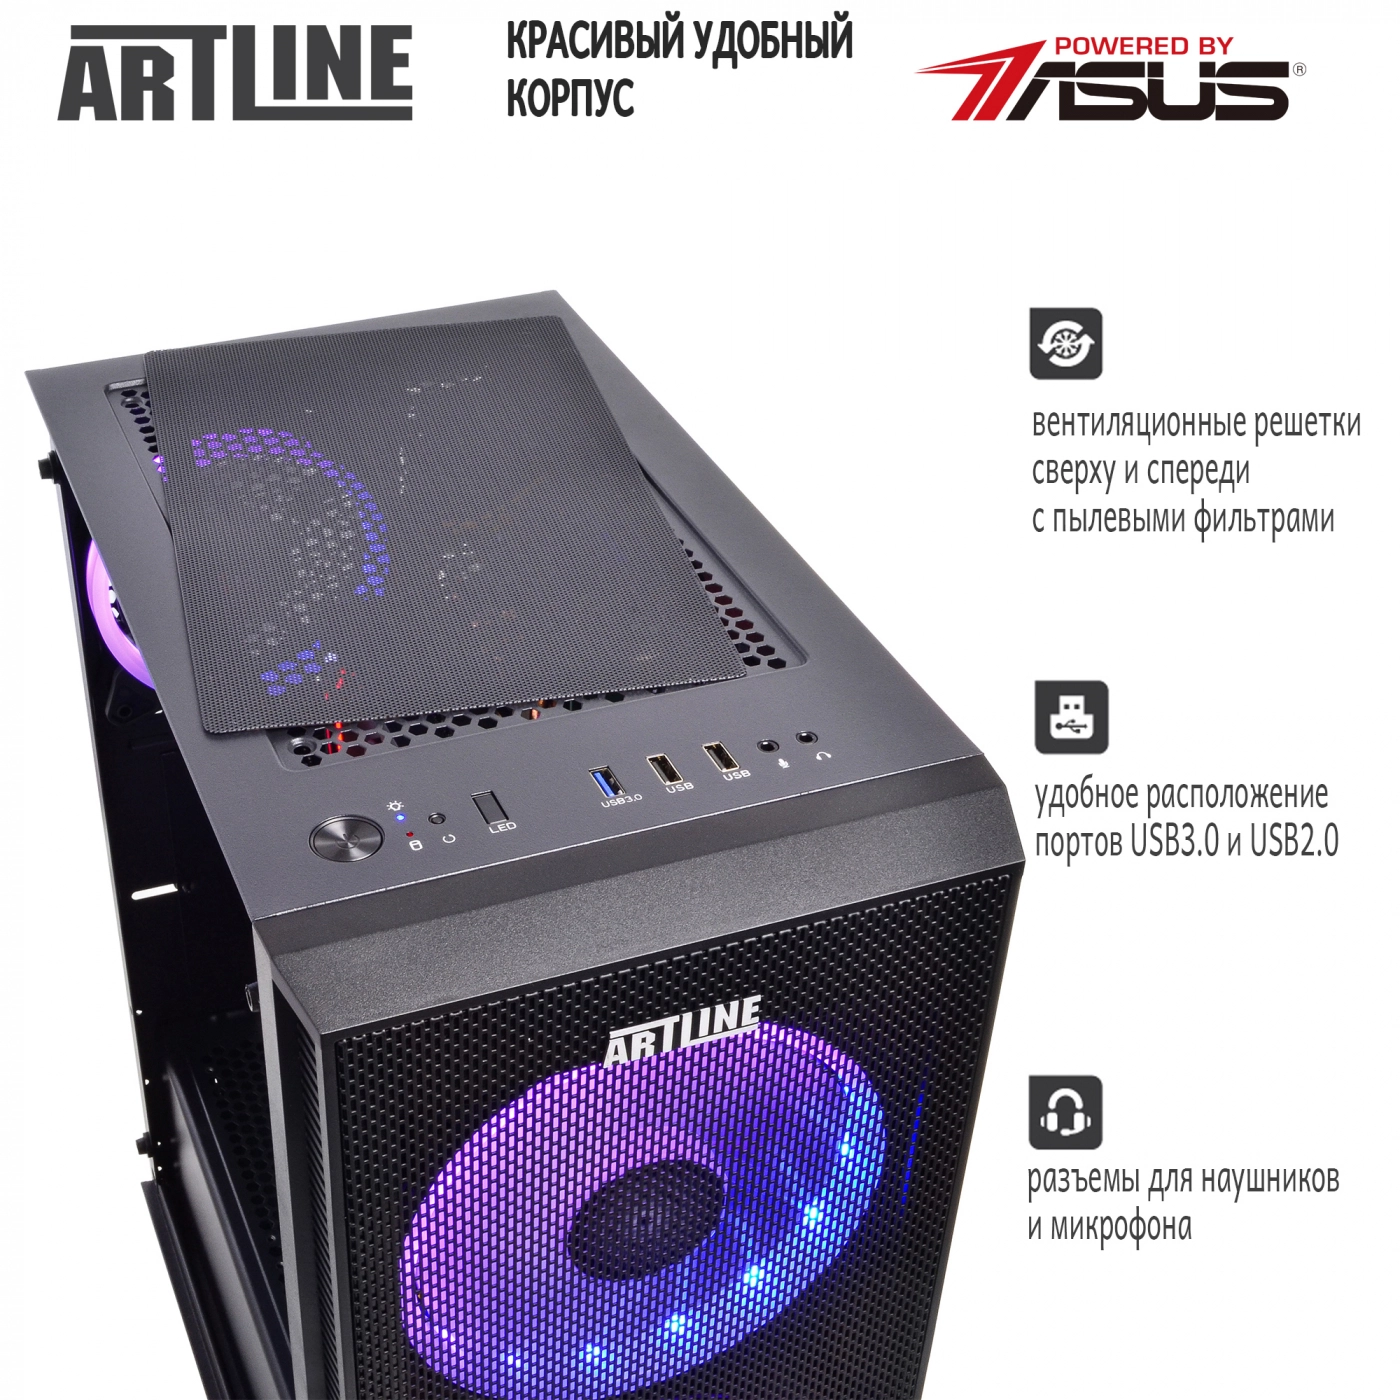 Купить Компьютер ARTLINE Gaming X63v16 - фото 4